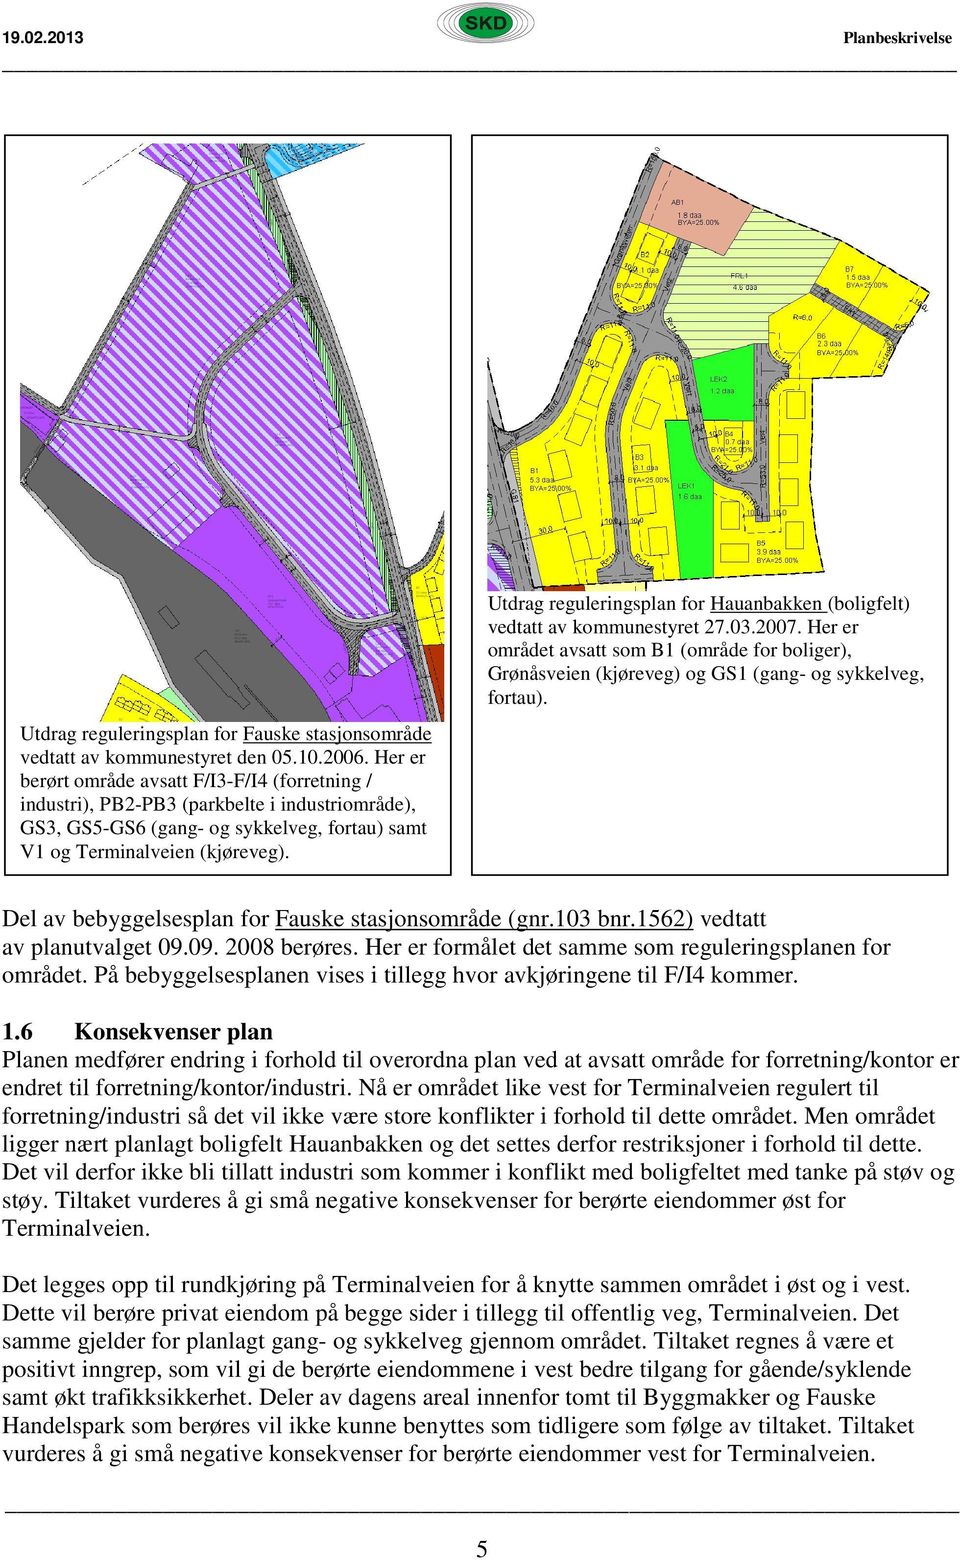 Utdrag reguleringsplan for Hauanbakken (boligfelt) vedtatt av kommunestyret 27.03.2007. Her er området avsatt som B1 (område for boliger), Grønåsveien (kjøreveg) og GS1 (gang- og sykkelveg, fortau).